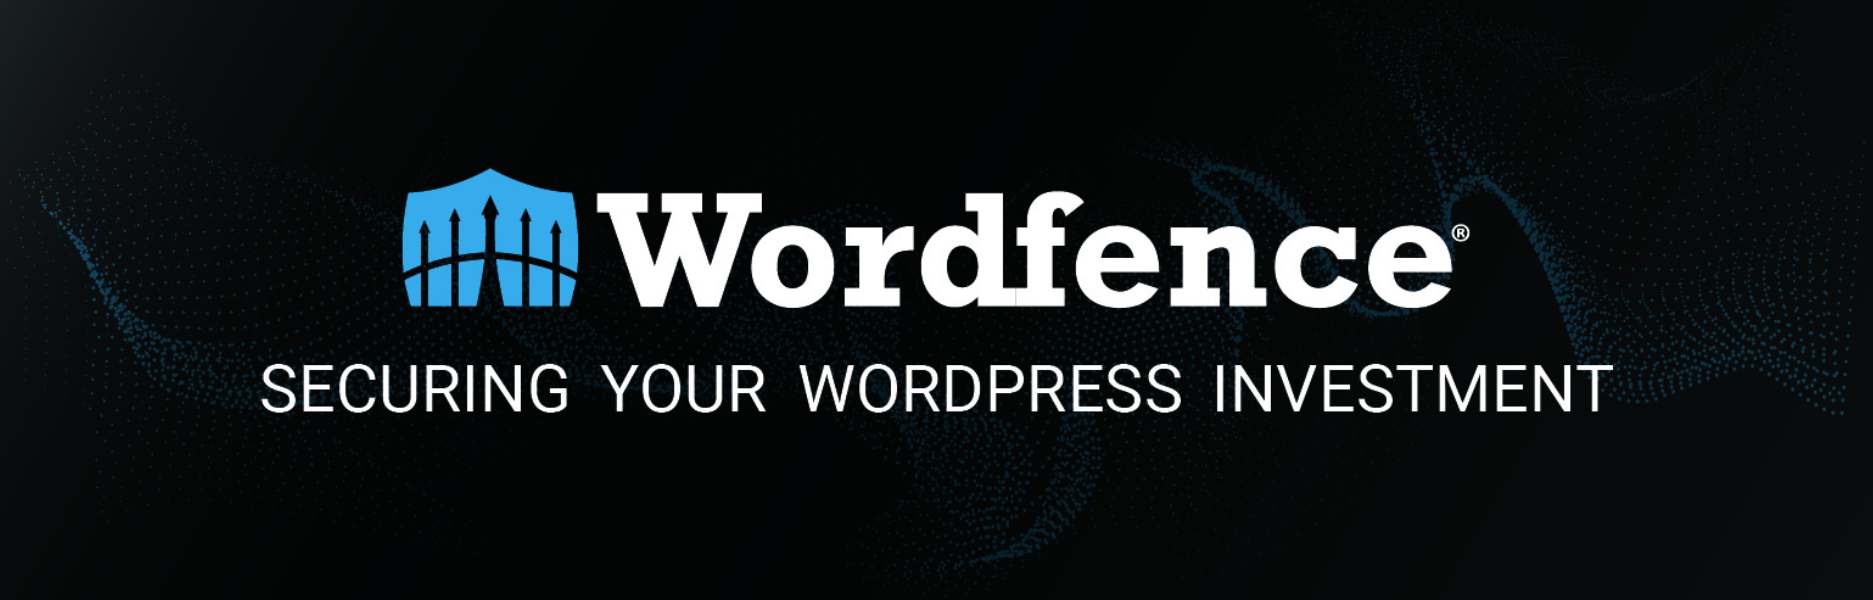 Wordfence Banner